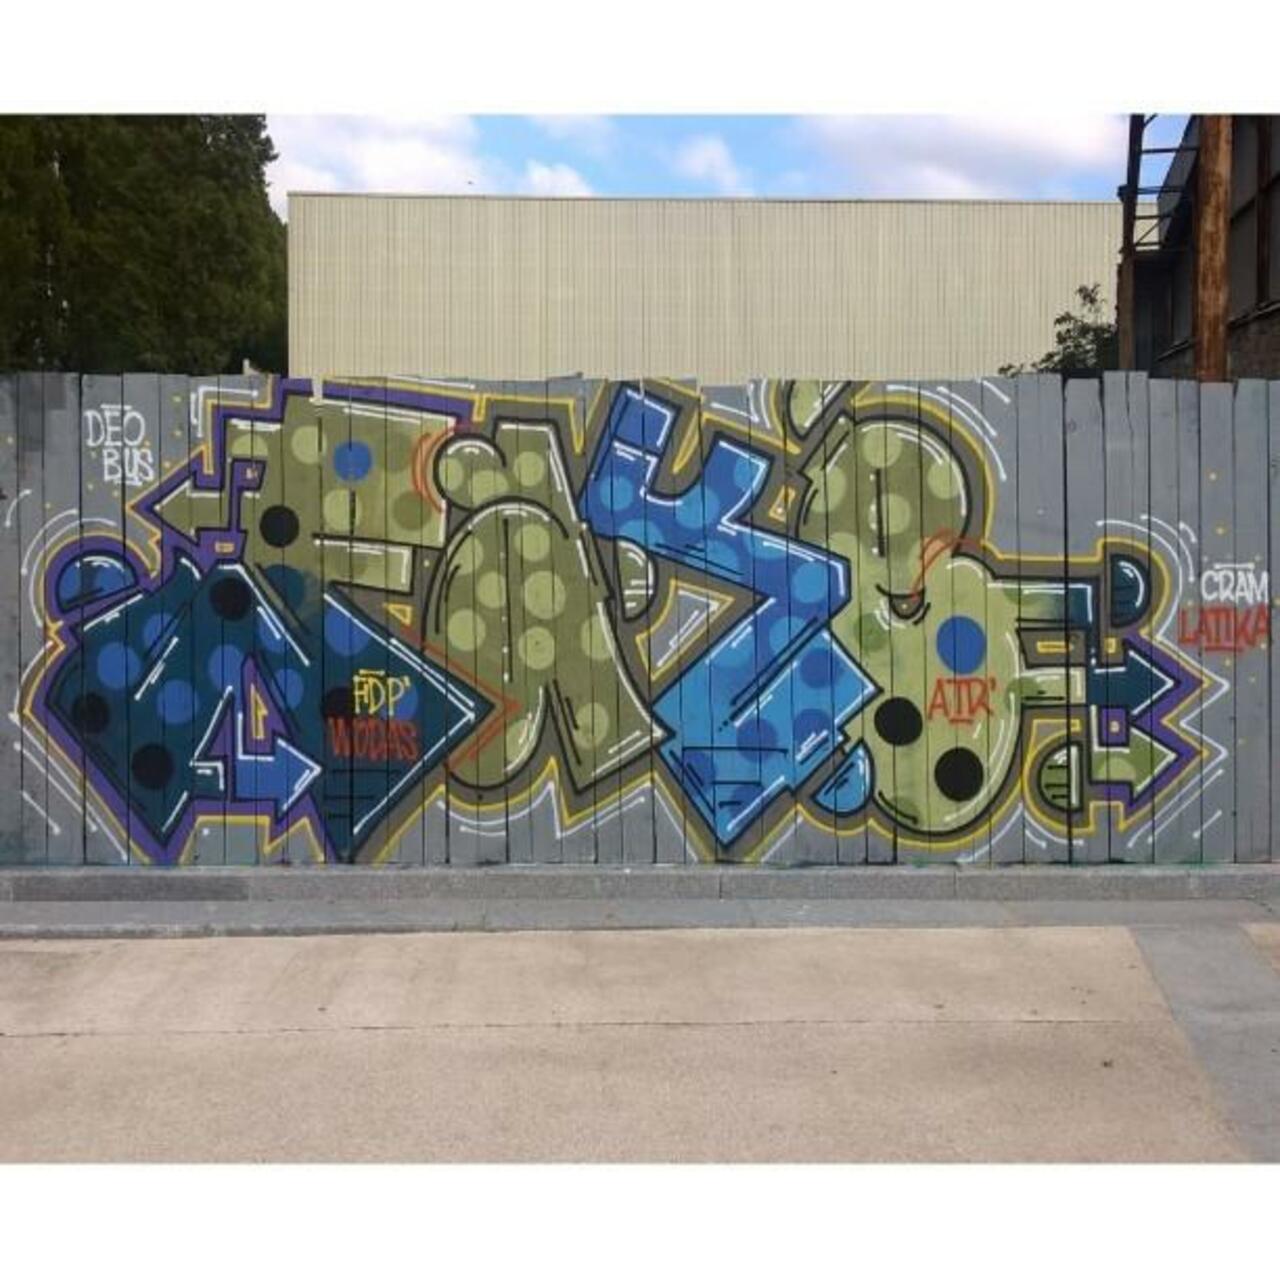 FAKE
#streetart #graffiti #graff #art #fatcap #bombing #sprayart #spraycanart #wallart #handstyle #lettering #urban… http://t.co/EgLzTsOrHV